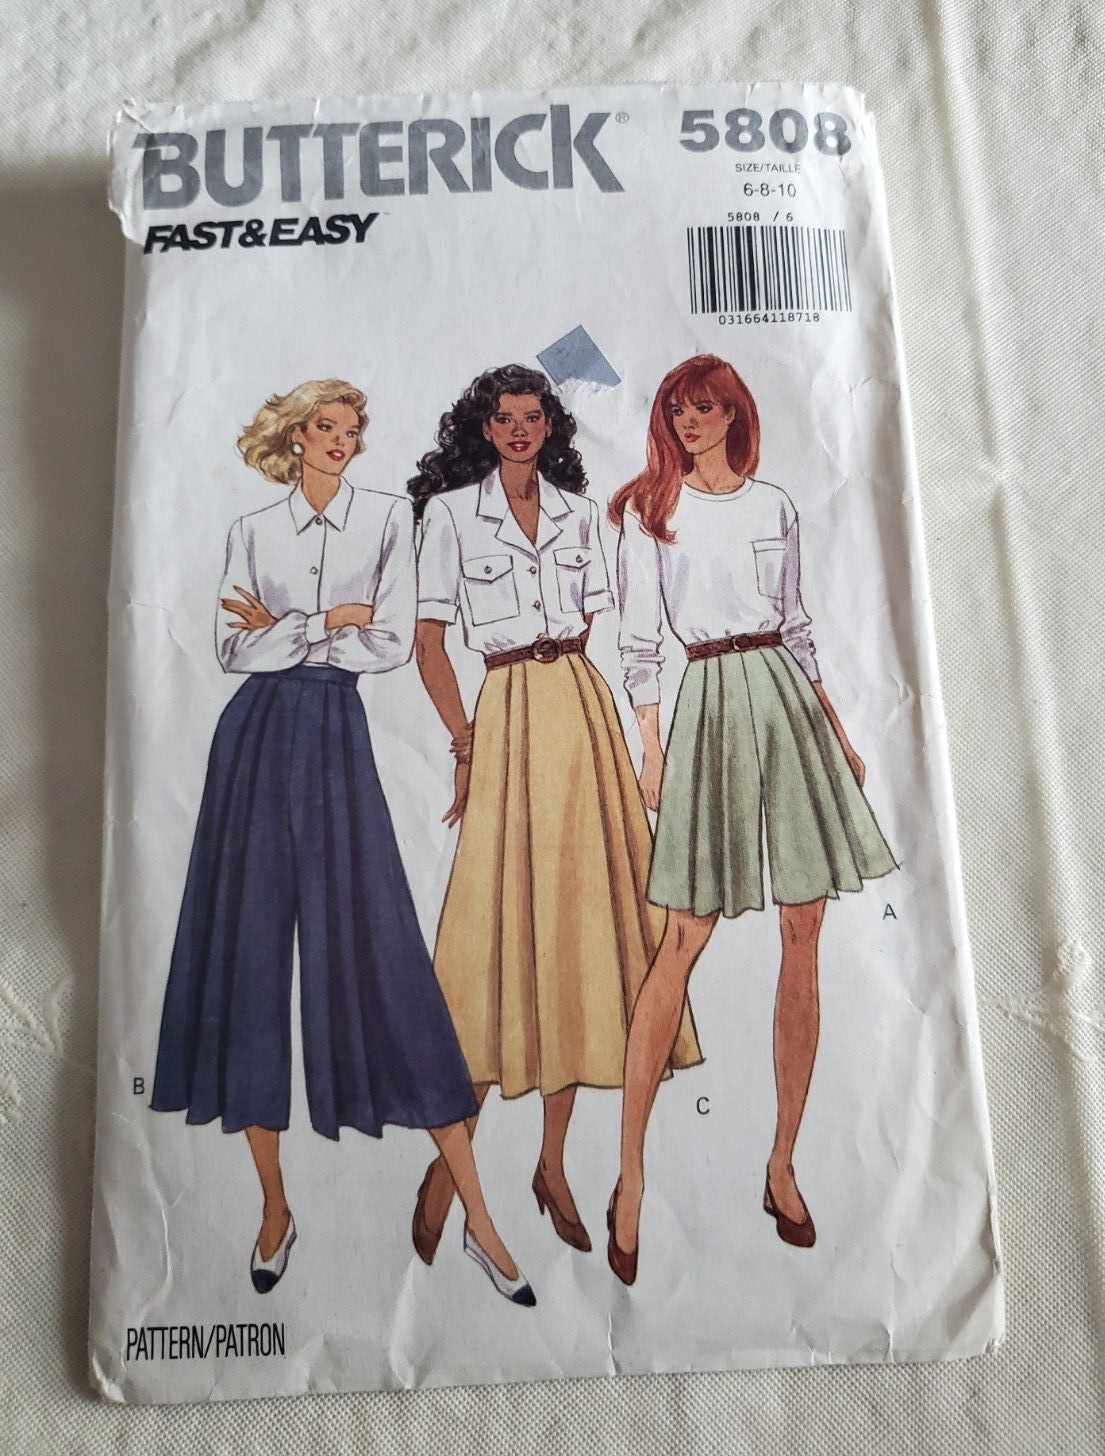 Butterick Pattern 5808 Split Skirt Pleated Skort Culottes Plus Size 6-10 used